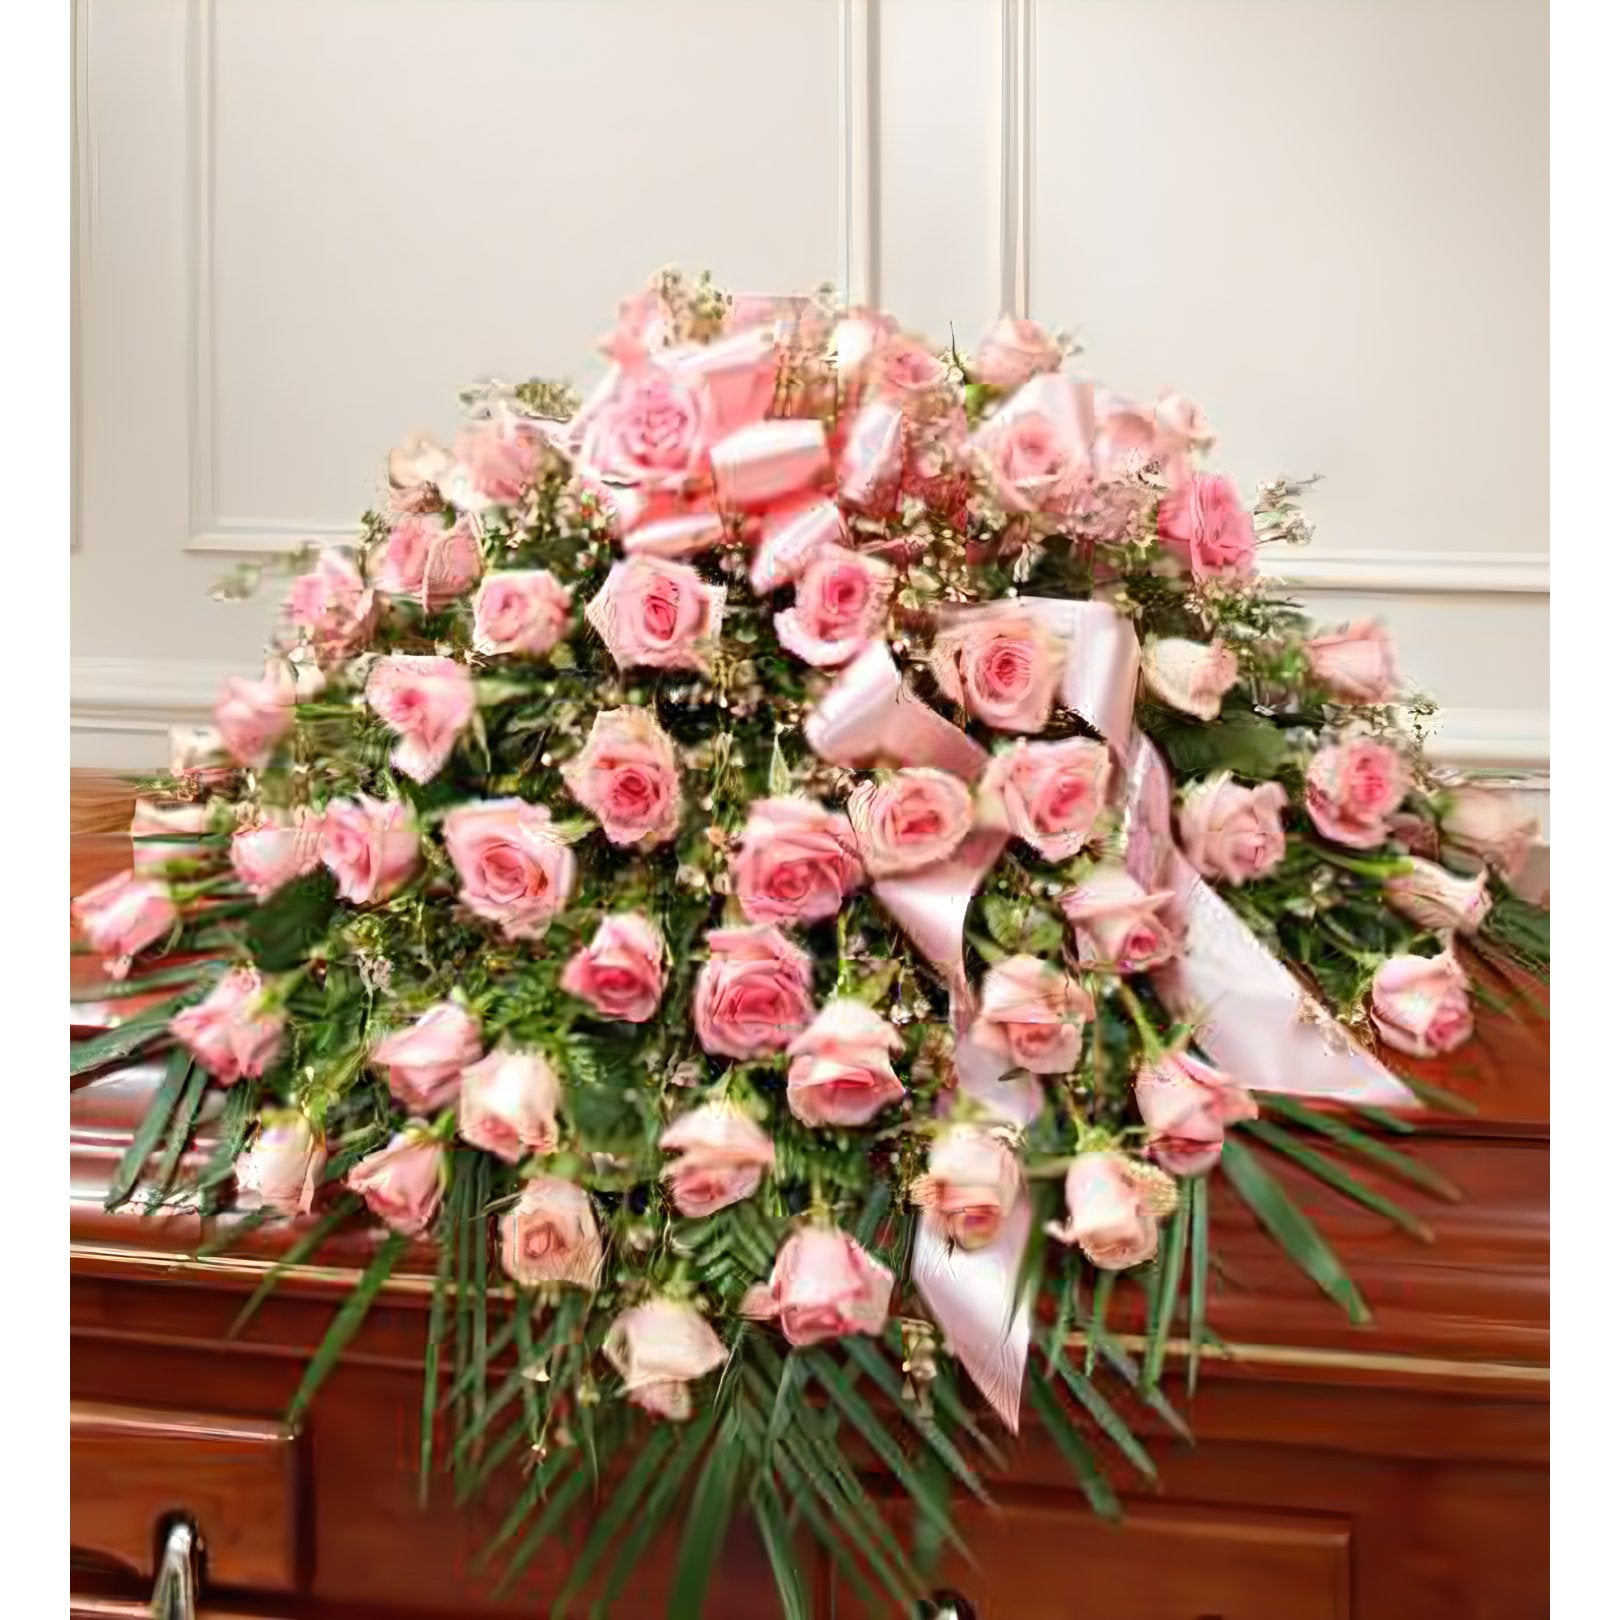 Cherished Memories Rose Half Casket Cover - Pink - Floral_Arrangement - Flower Delivery NYC